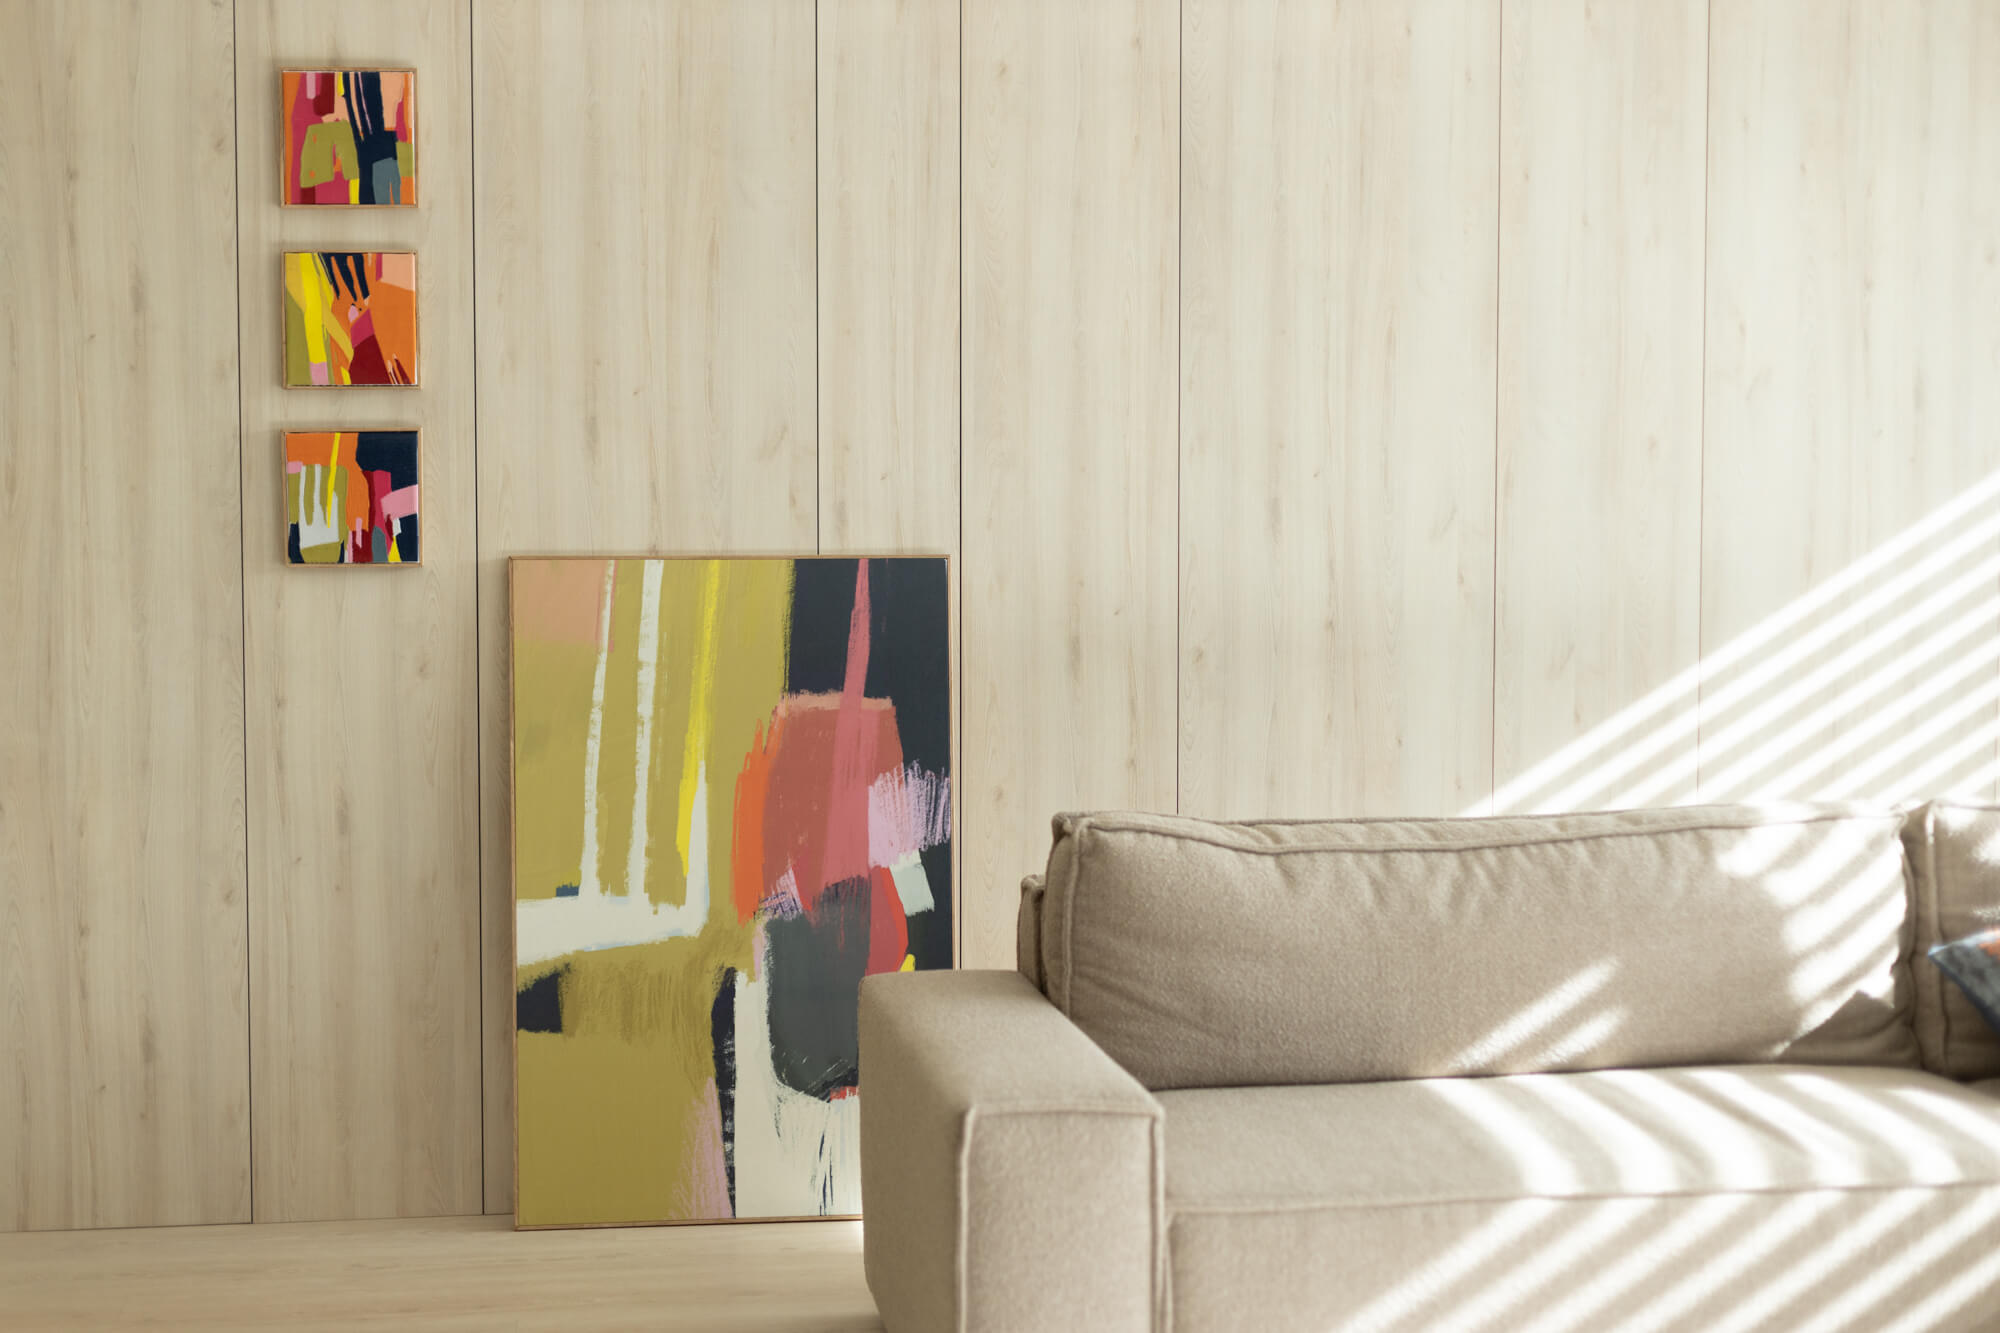 Wnętrze salonu. Na ścianie widzą trzy obrazki dekoracyjne w formie kwadratu, na podłodze stoi kolorowy obraz abstrakcyjny. Na pierwszym planie kanapa.